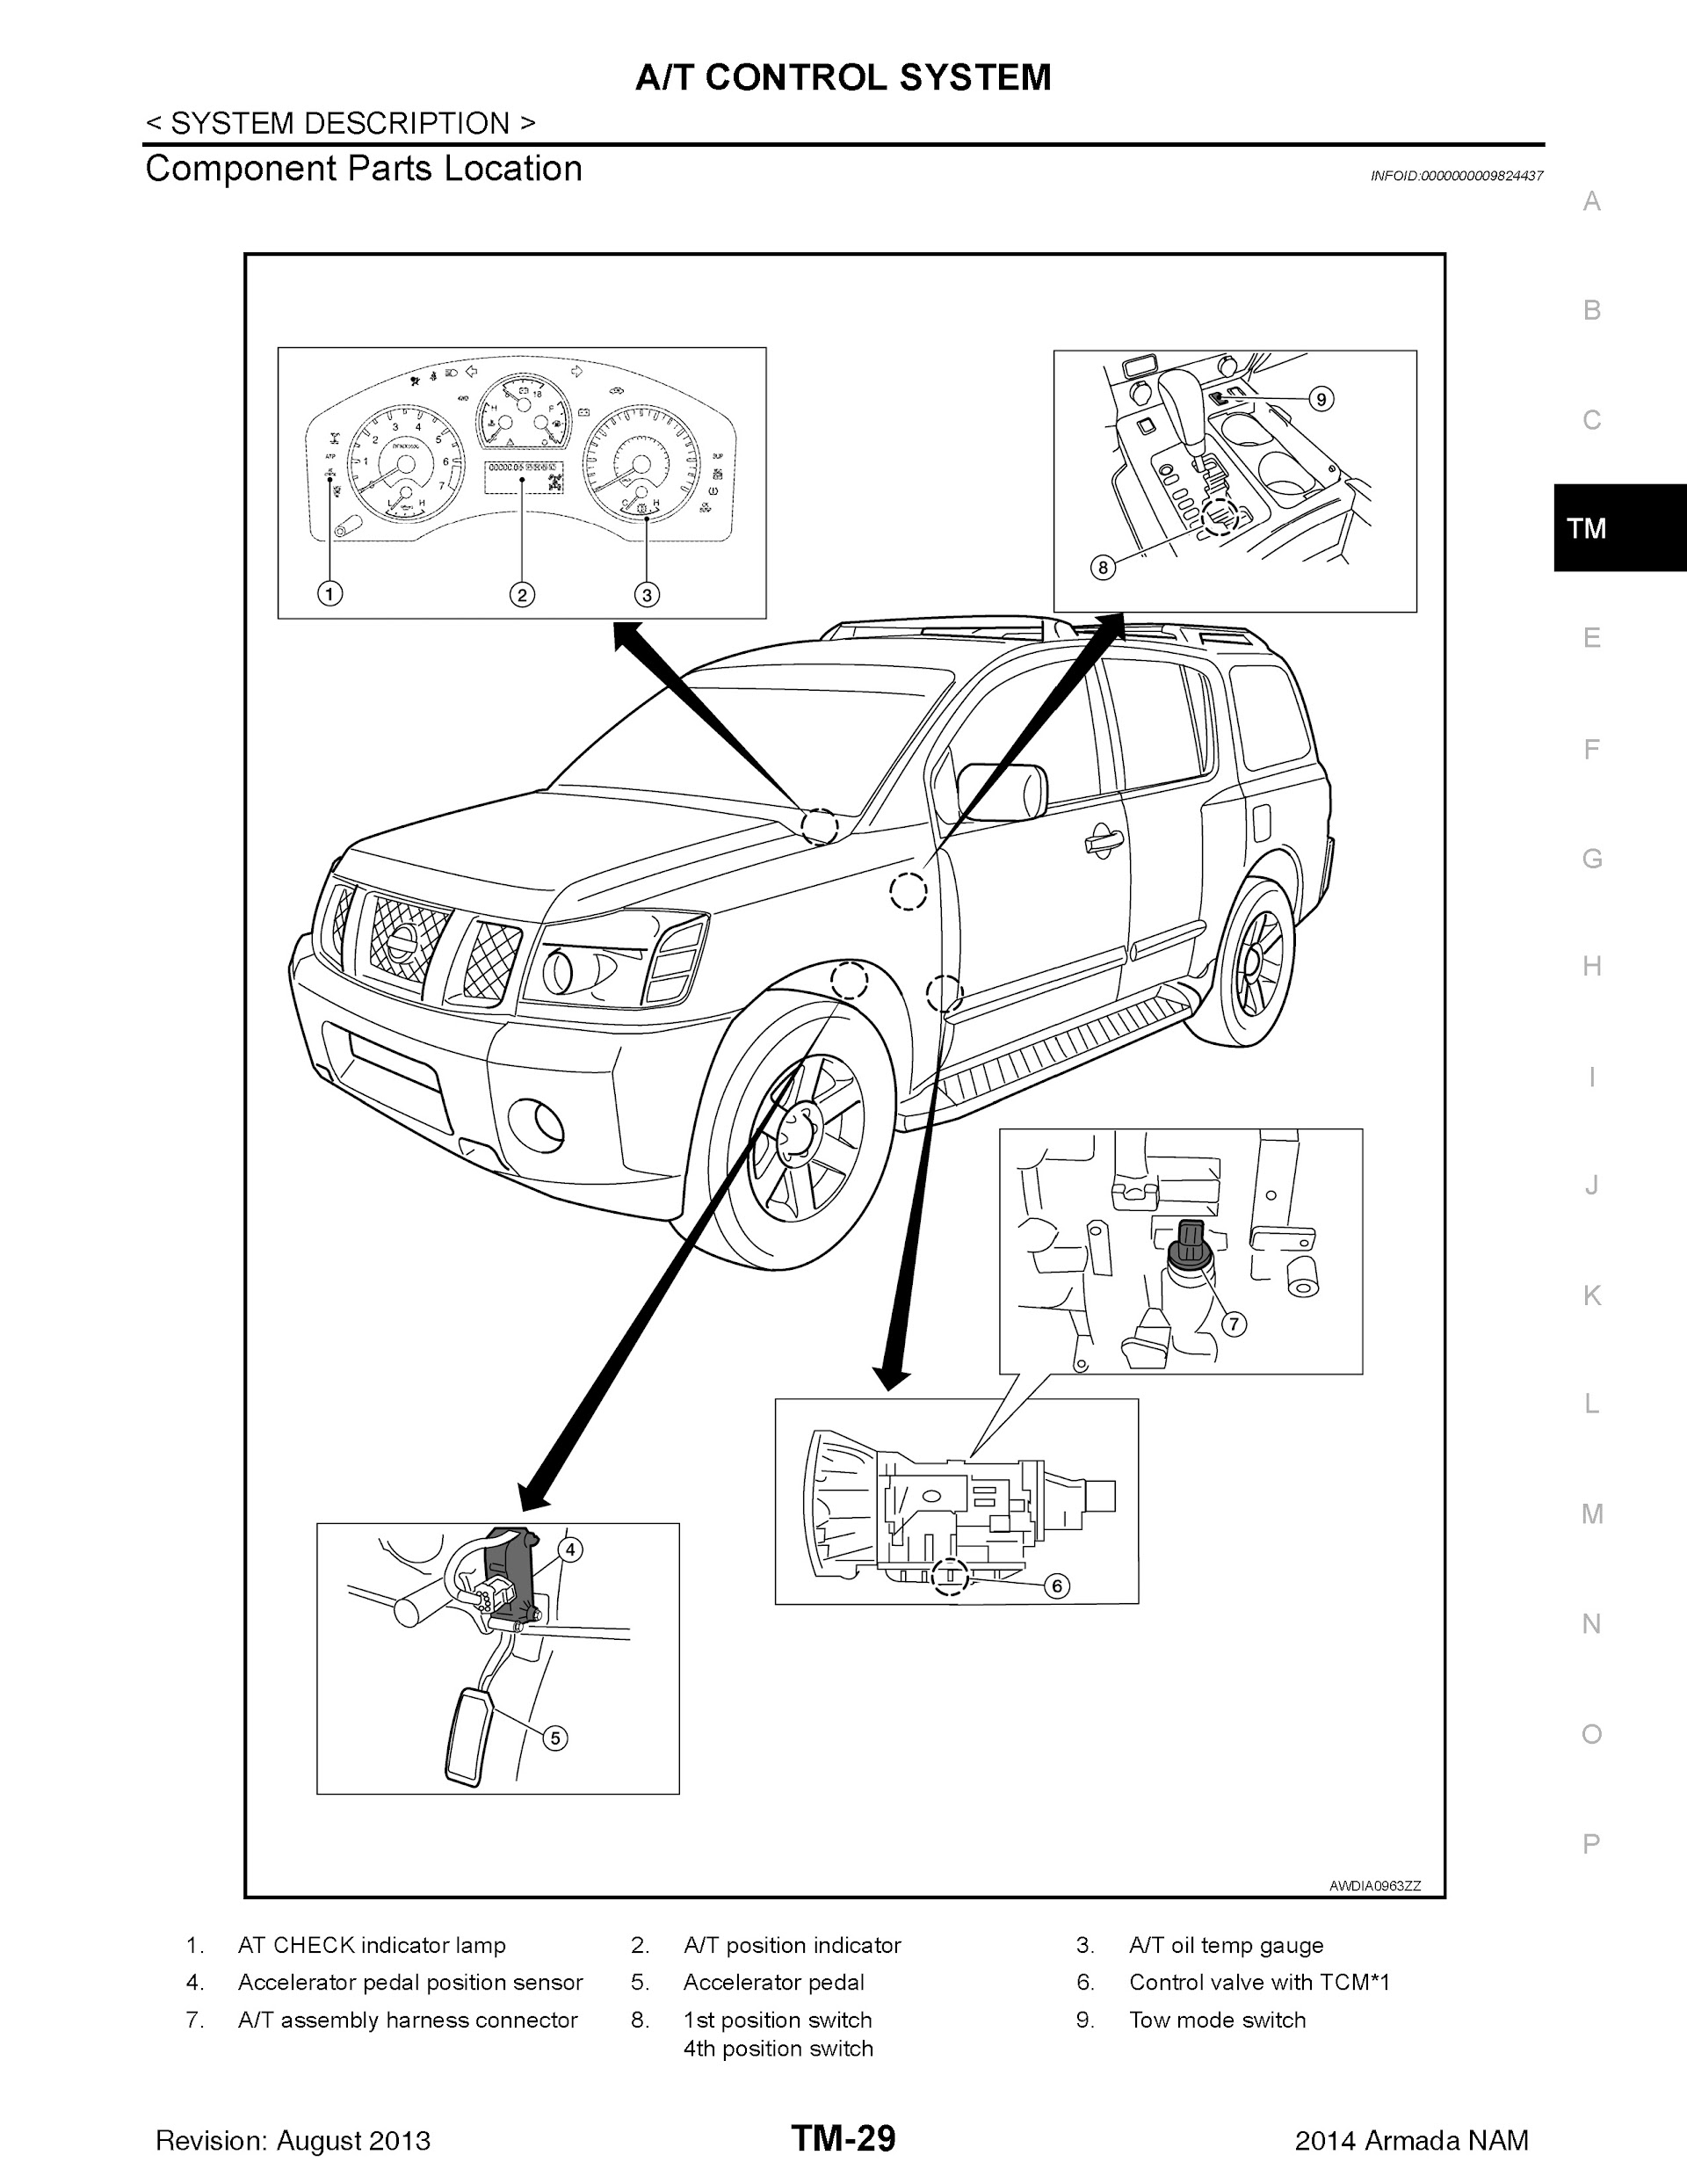 CONTENTS: 2014 Nissan Armada Repair Manual, A/T Control System